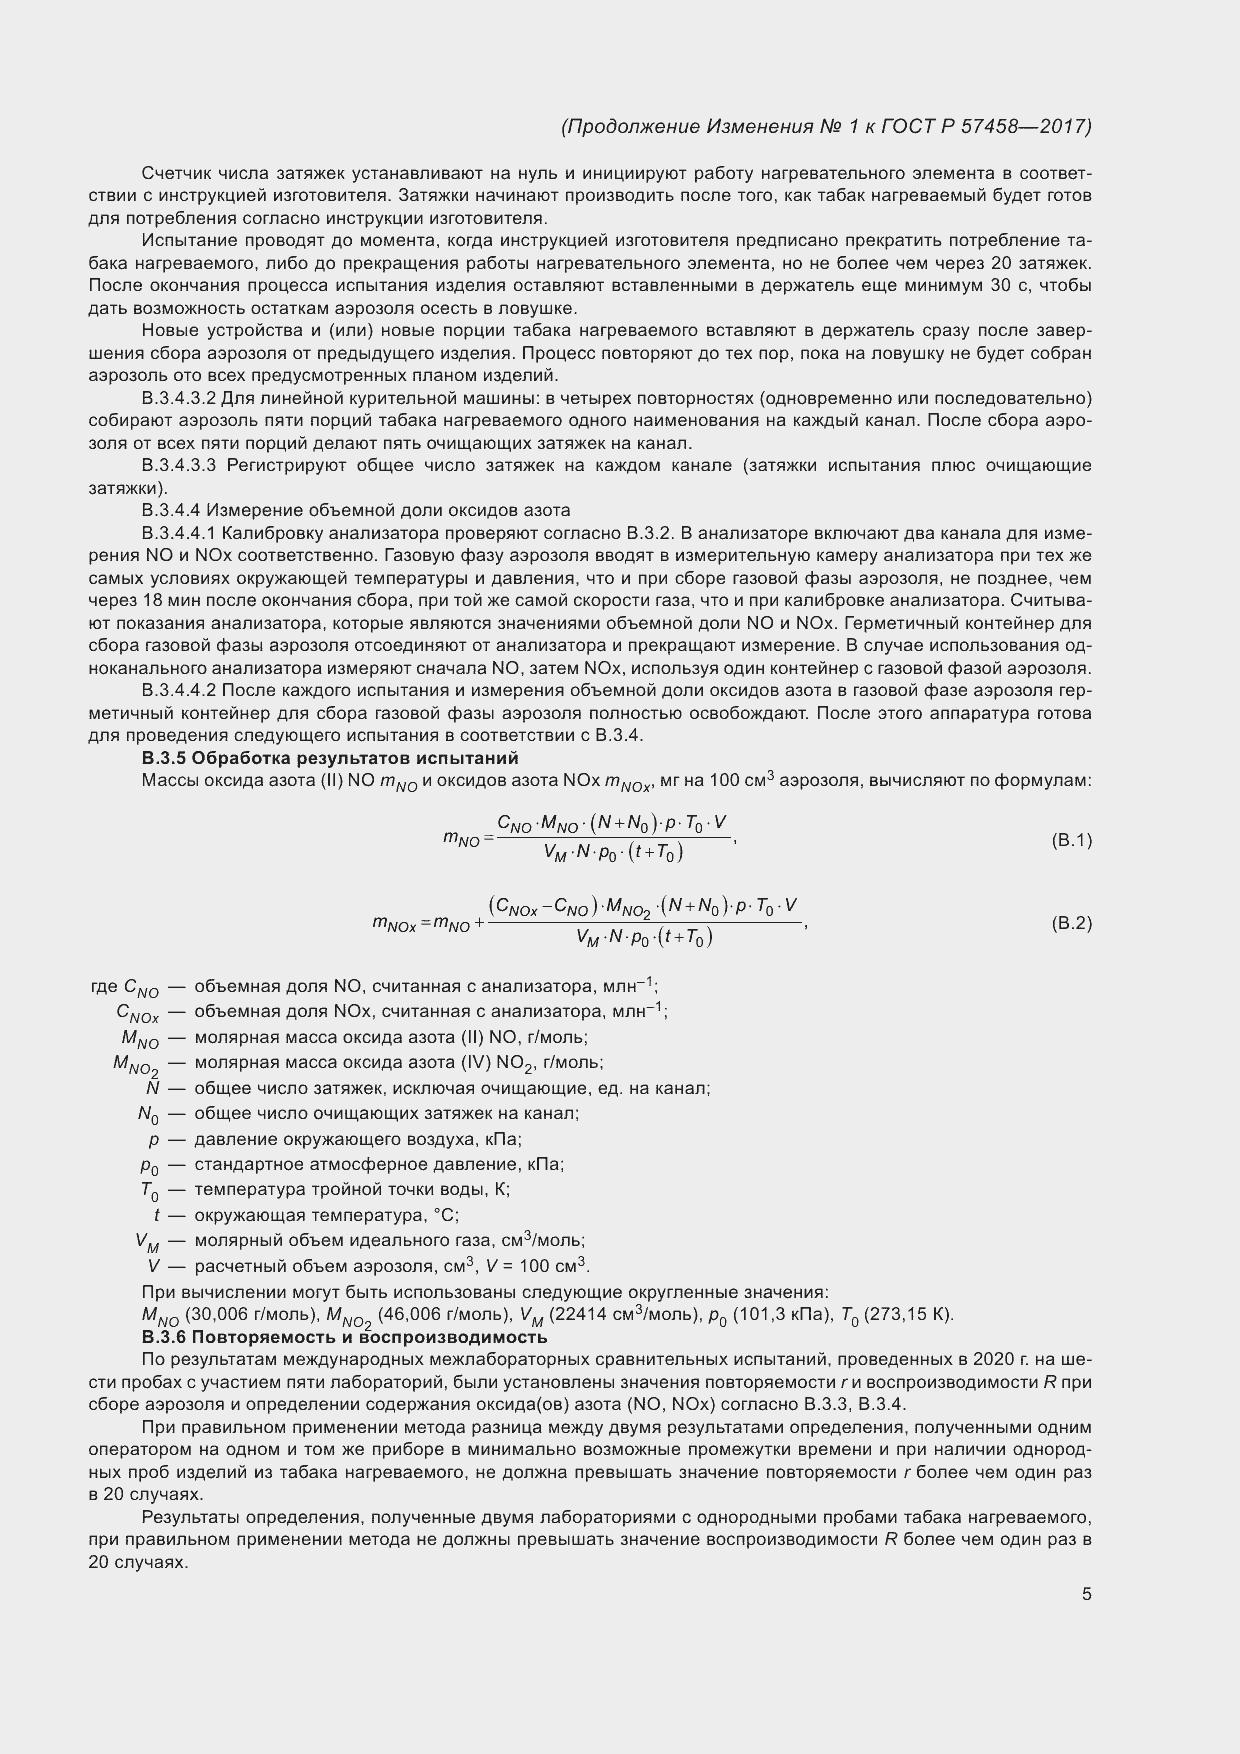 Изменение №1 к ГОСТ Р 57458-2017